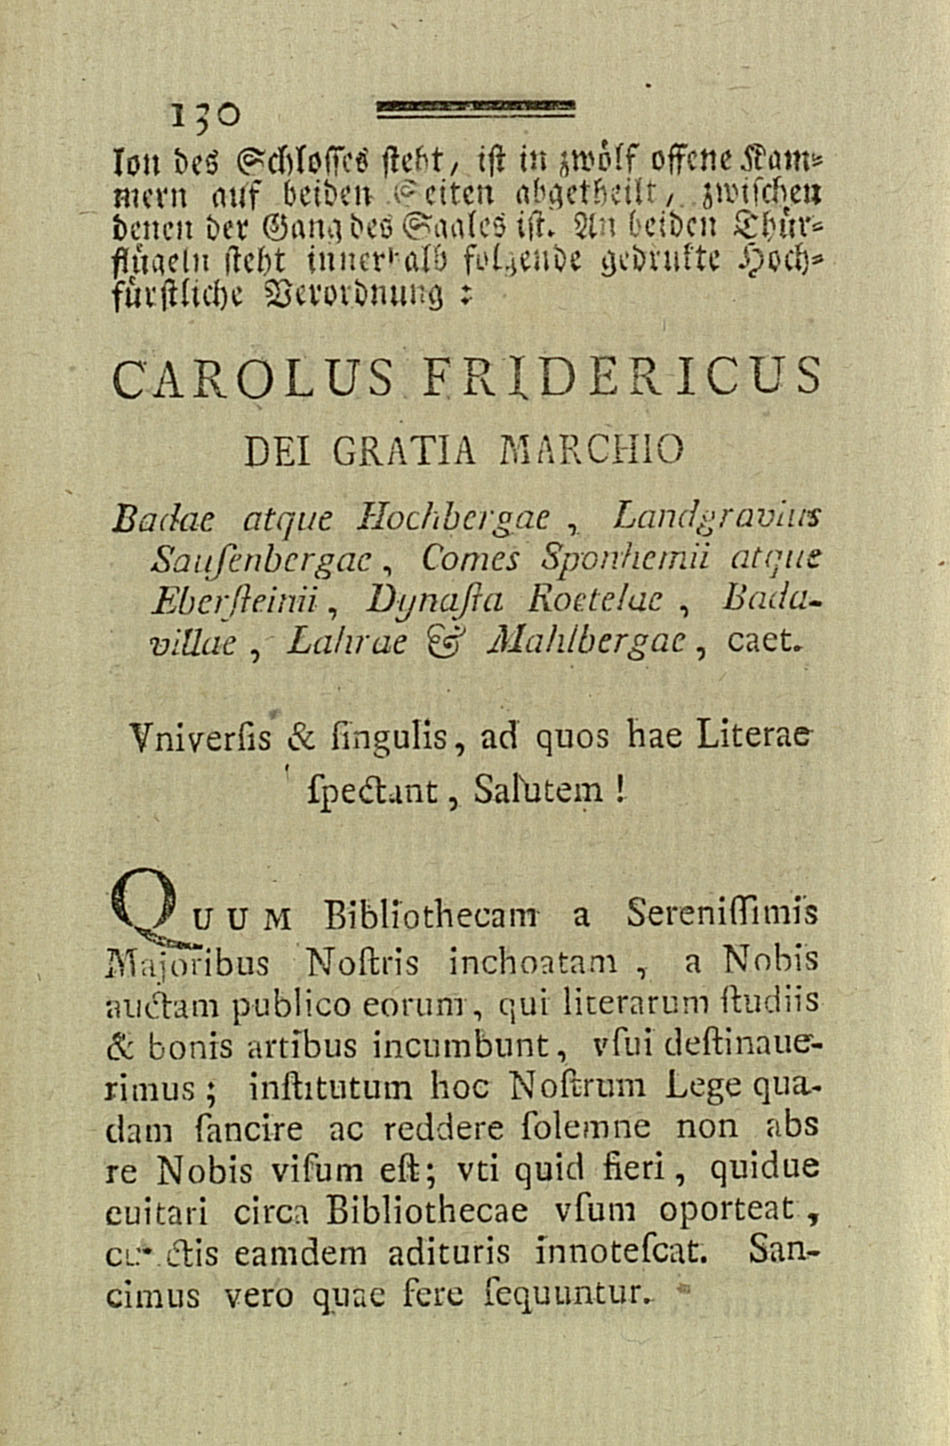 Bild der ersten Benutzungsordnung für die Hofbibliothek von Karl Friedrich von Baden, 1770.